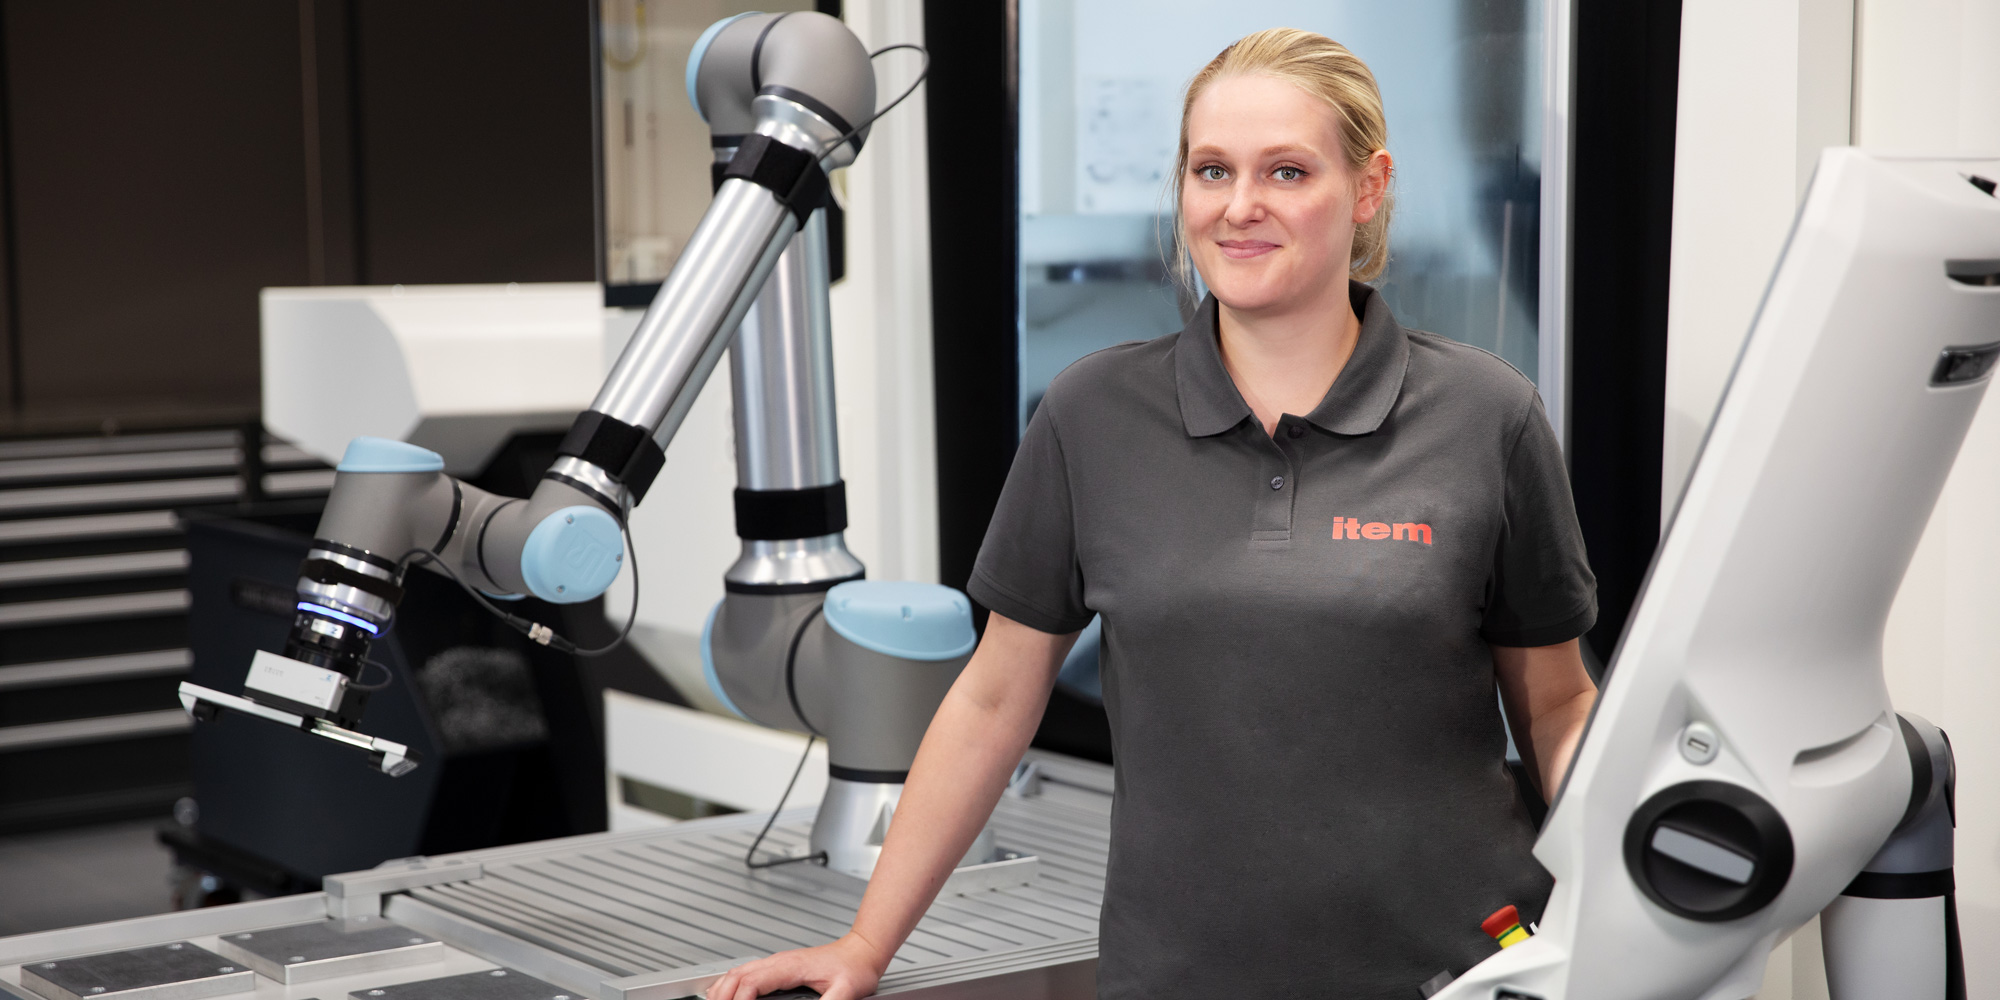 Robotik in der Industrie: Nahtlos und flexibel integriert